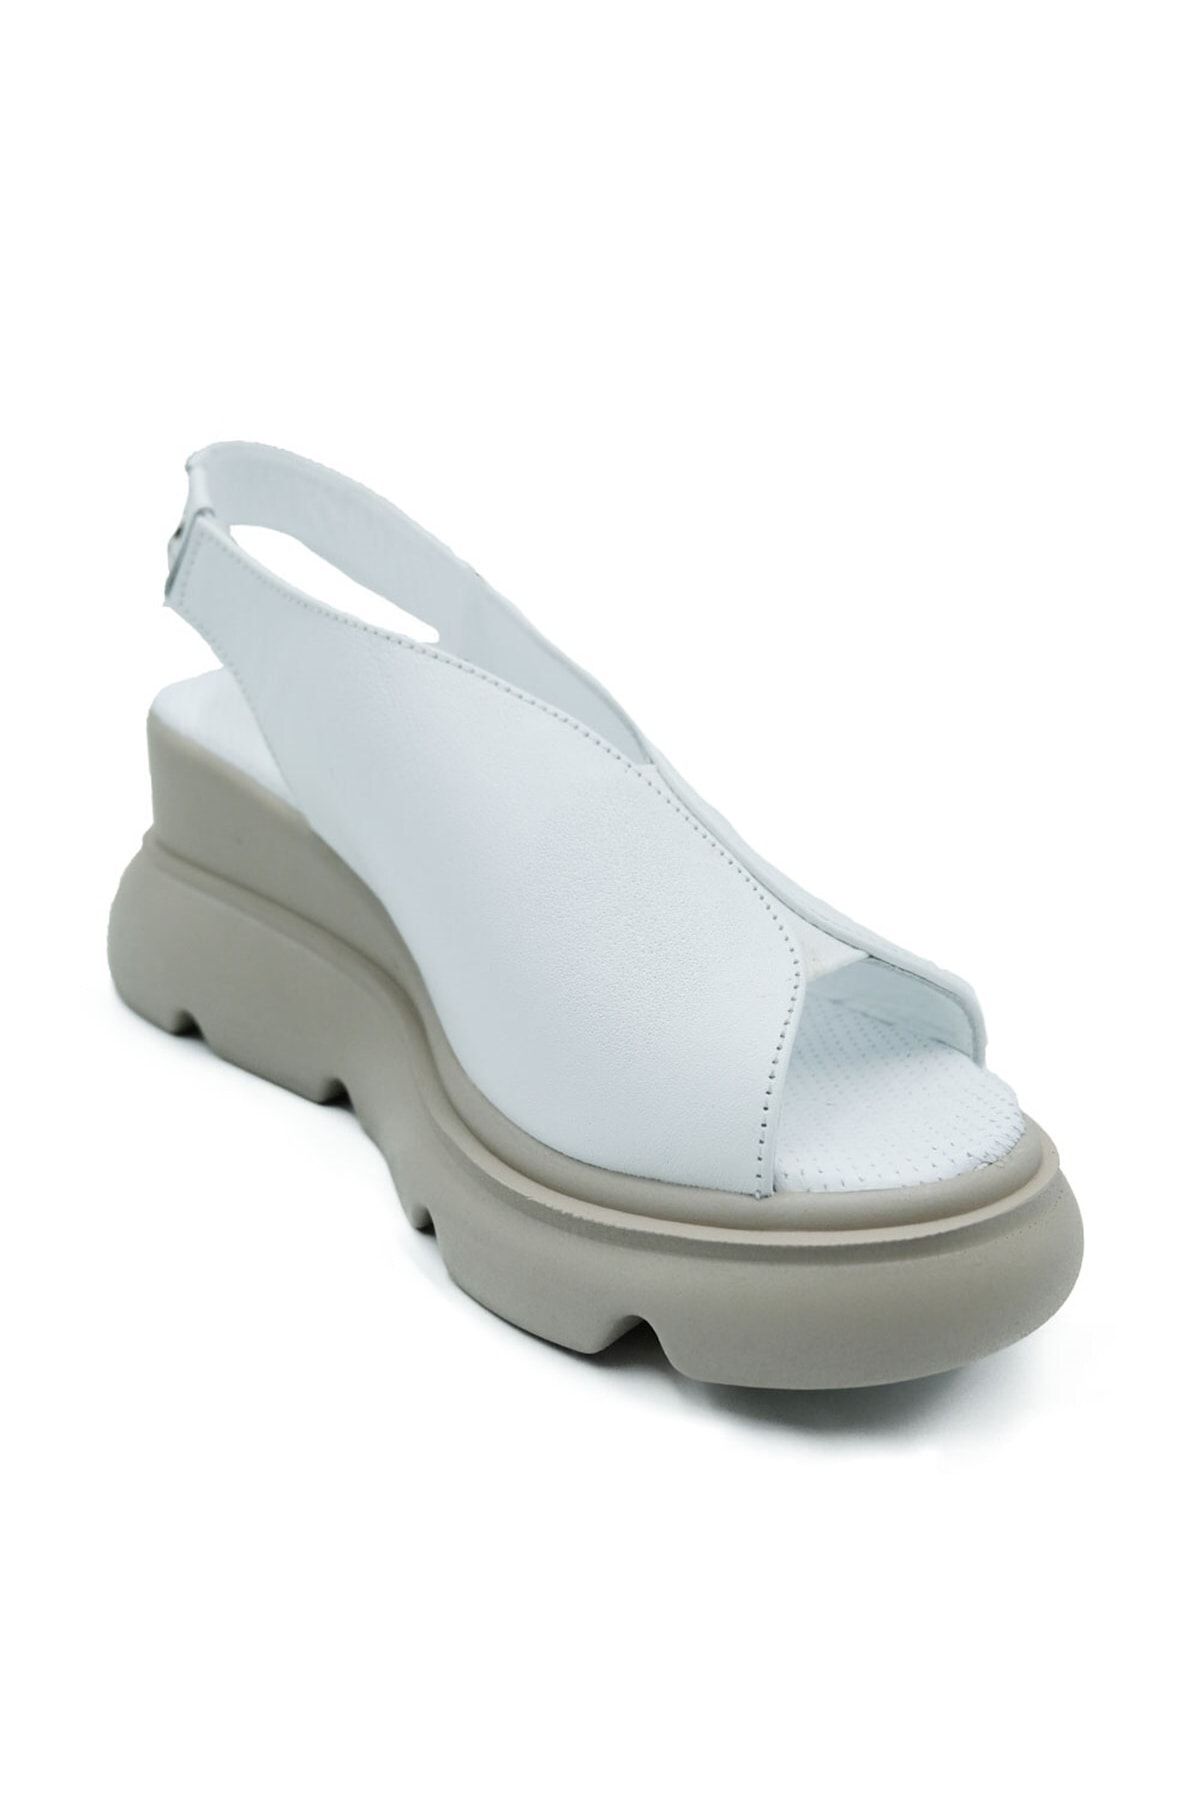 Pierre Cardin Kadın Gerçek Deri Dolgu Topuk Sandalet Pc-7179